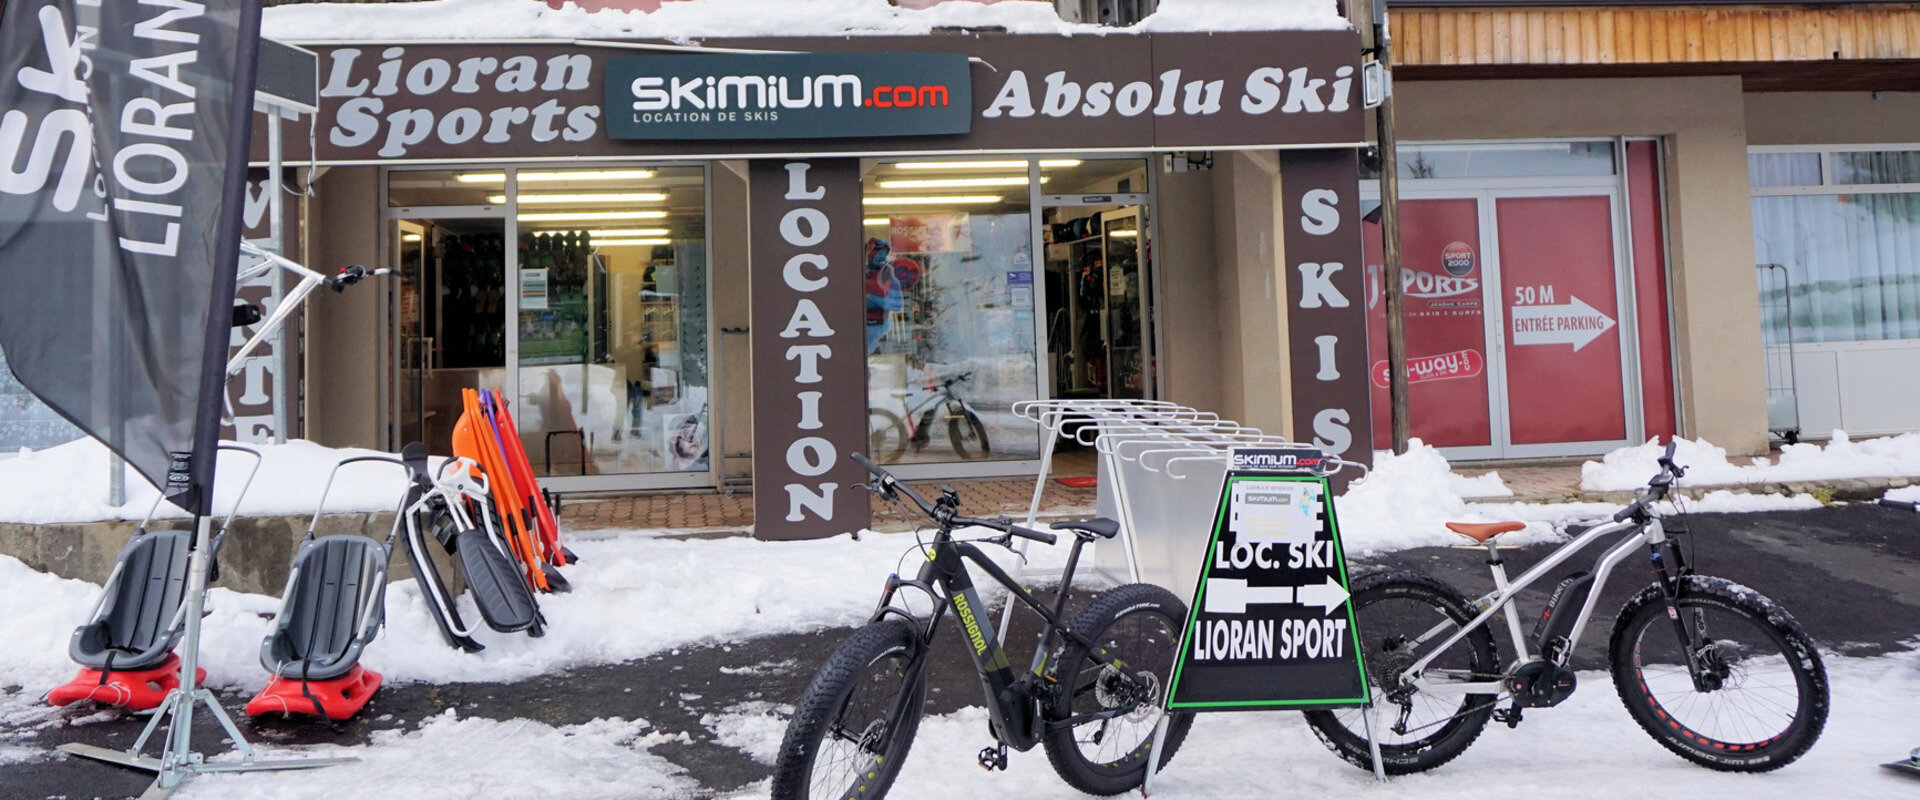 Pour contacter le magasin de location Absolu Ski